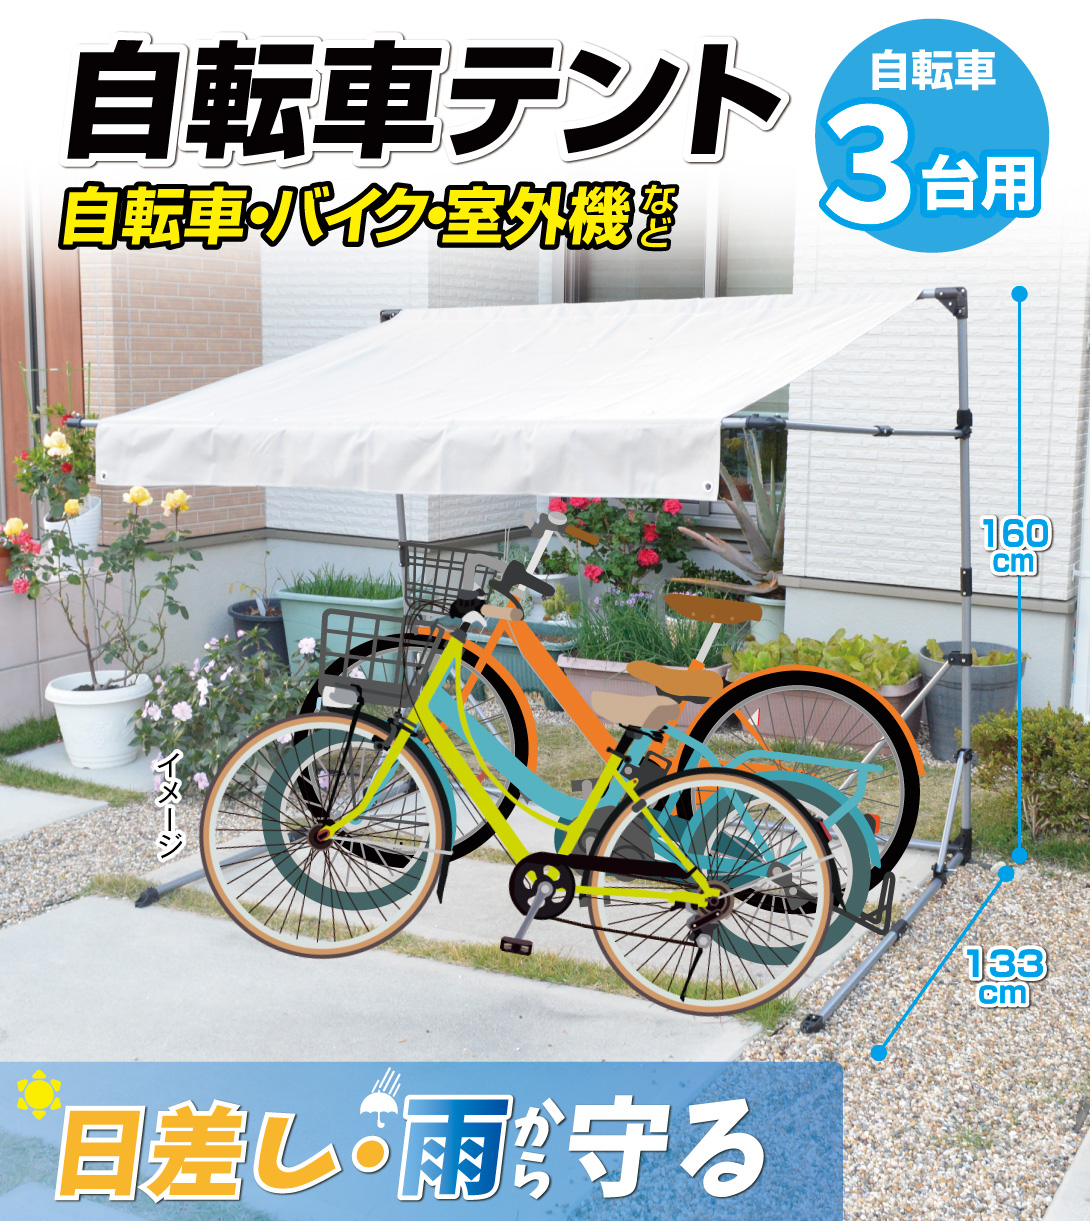 サイクルハウス 4台 自転車置き場 家庭用 屋根 テント おしゃれ 防水 UVカット 自転車 バイク 置き場 物置き ハウス サイクルポート - 1